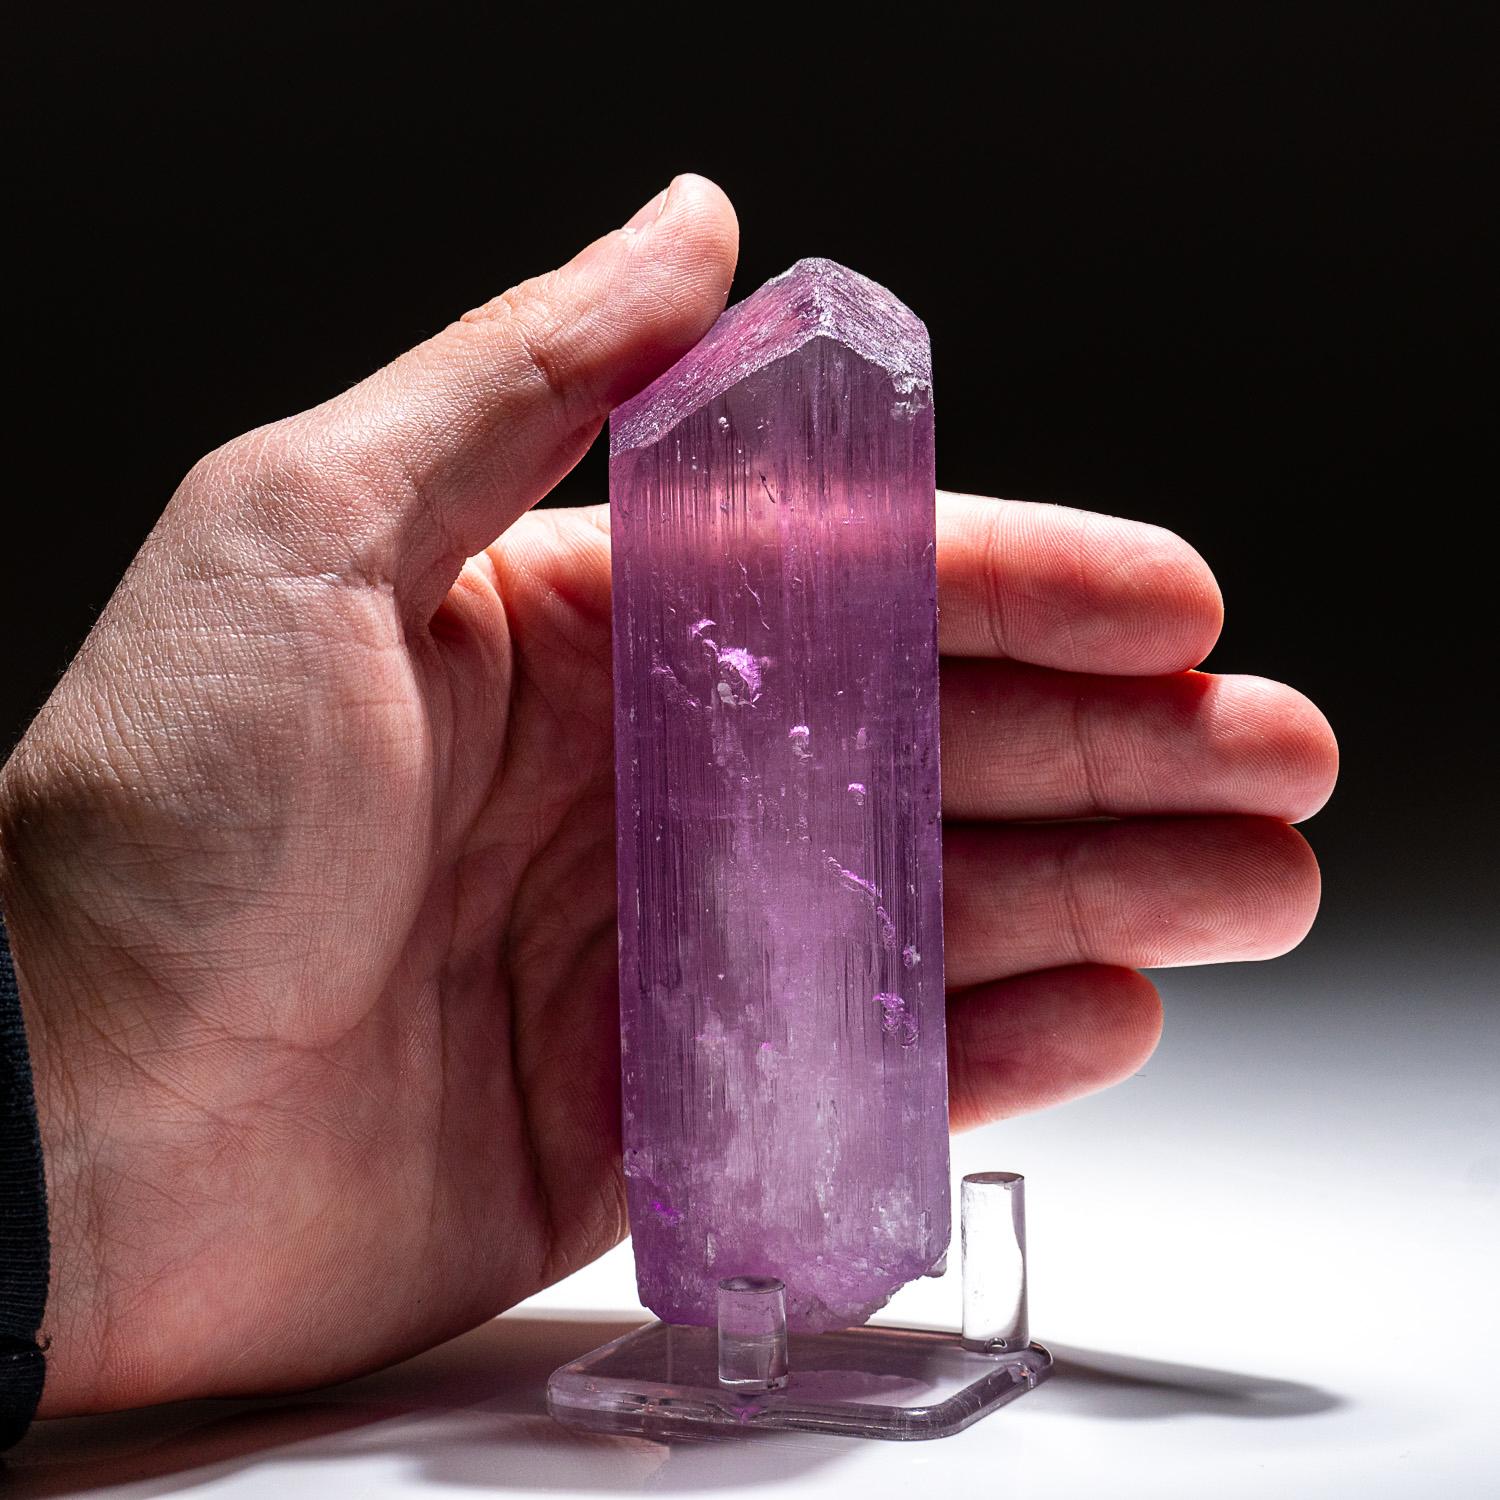 Grand cristal unique de Kunzite spodumène rose transparent avec une terminaison abrupte sur le dessus, et une terminaison complexe sur le dessous.

La kunzite est un cristal magnifique, à l'énergie pure et à la nature joyeuse. De couleur rose pâle